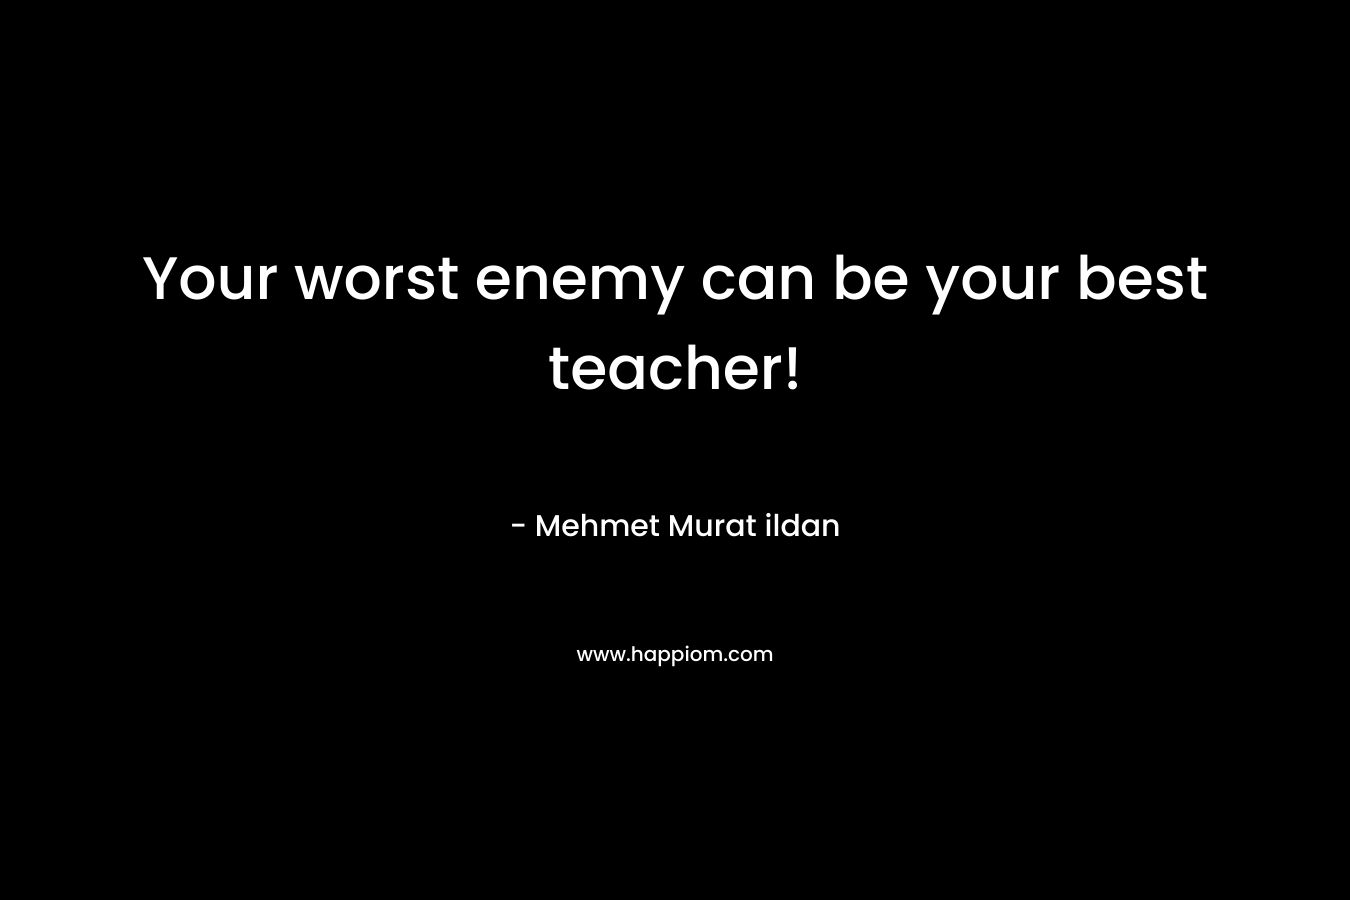 Your worst enemy can be your best teacher! – Mehmet Murat ildan